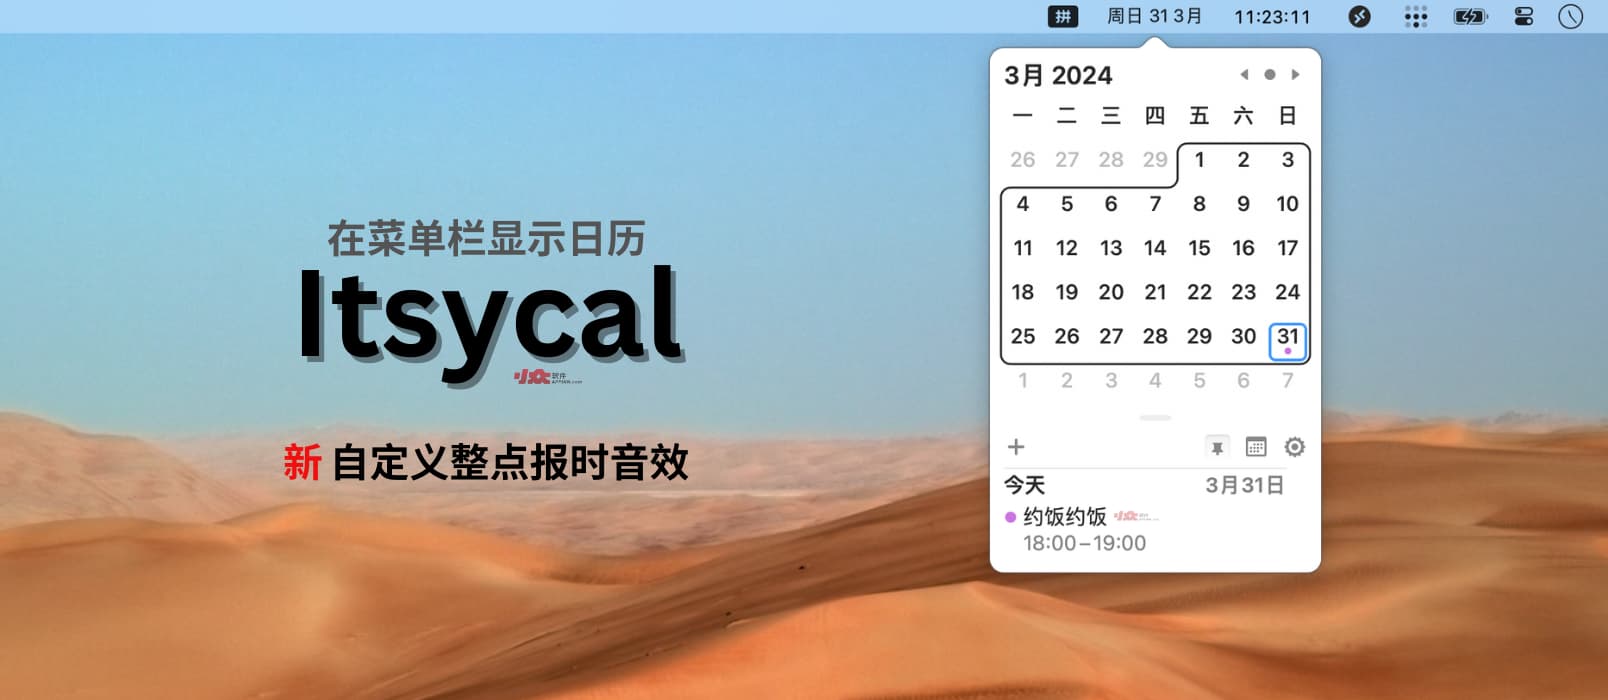 Itsycal - 在 Mac 菜单栏显示迷你日历：新增自定义整点报时音效功能